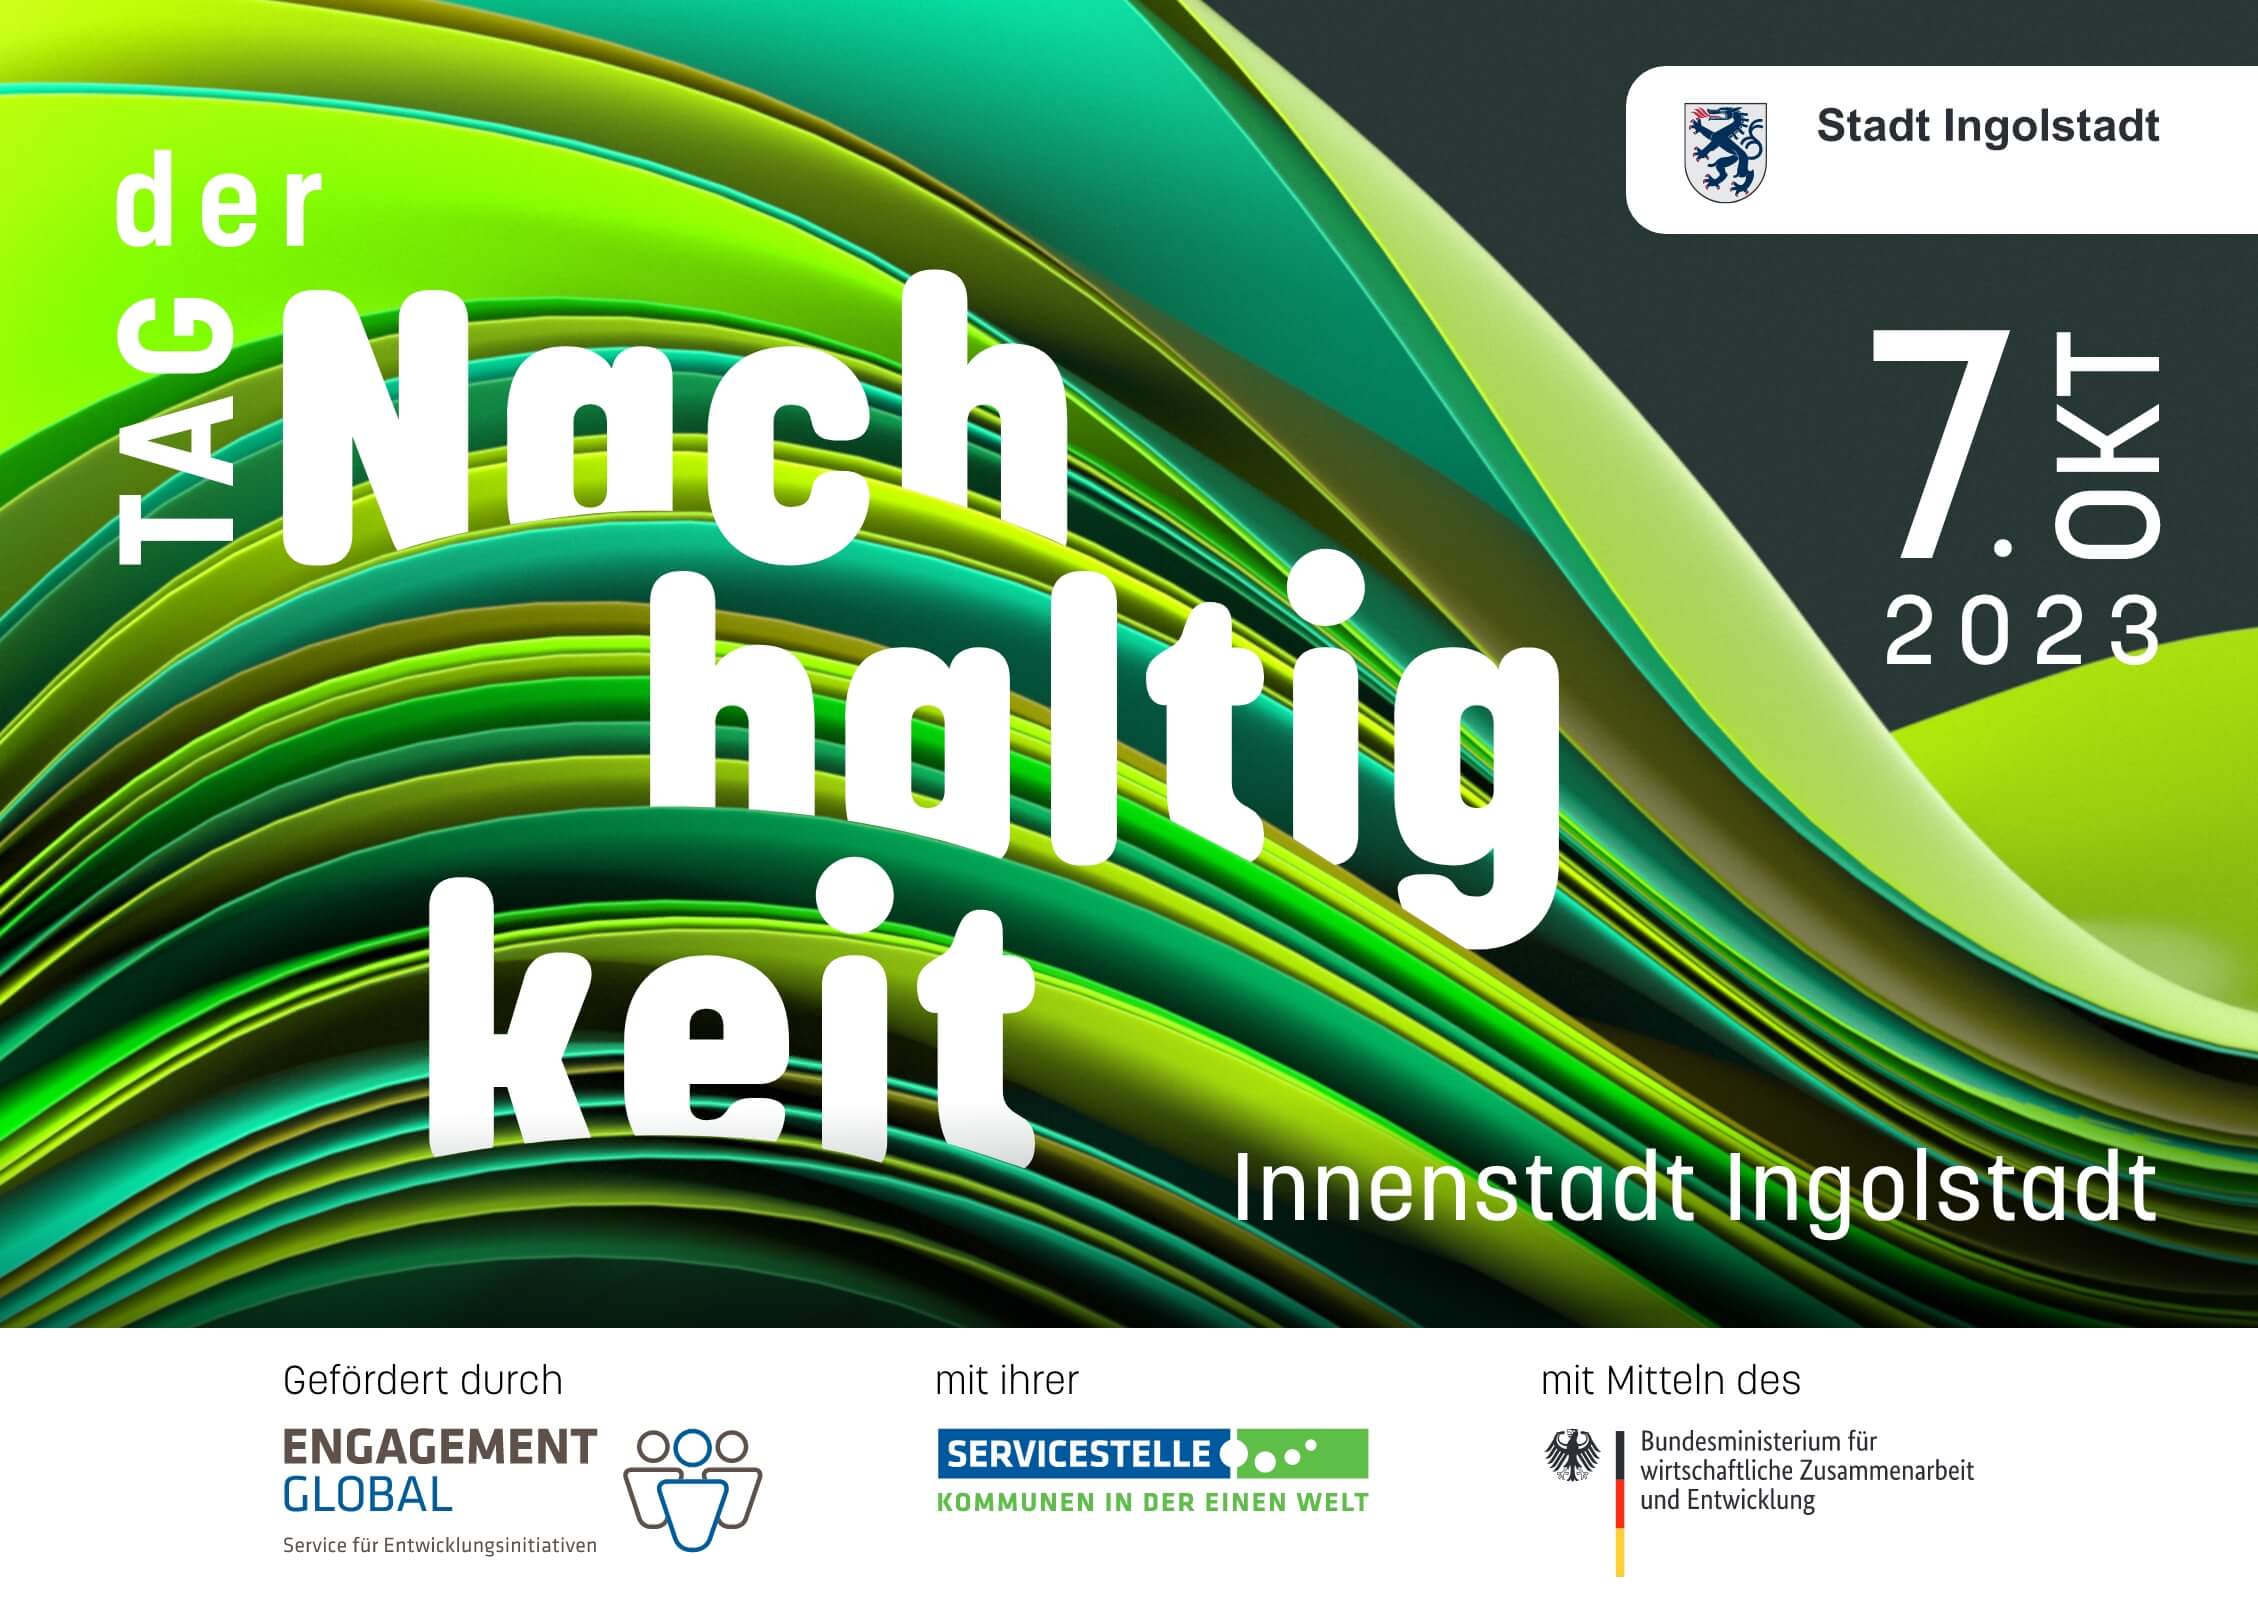 Das Bild zeigt einen Schriftzug "Tag der Nachhaltigkeit" am 7. Oktober 2023, Innenstadt Ingolstadt.